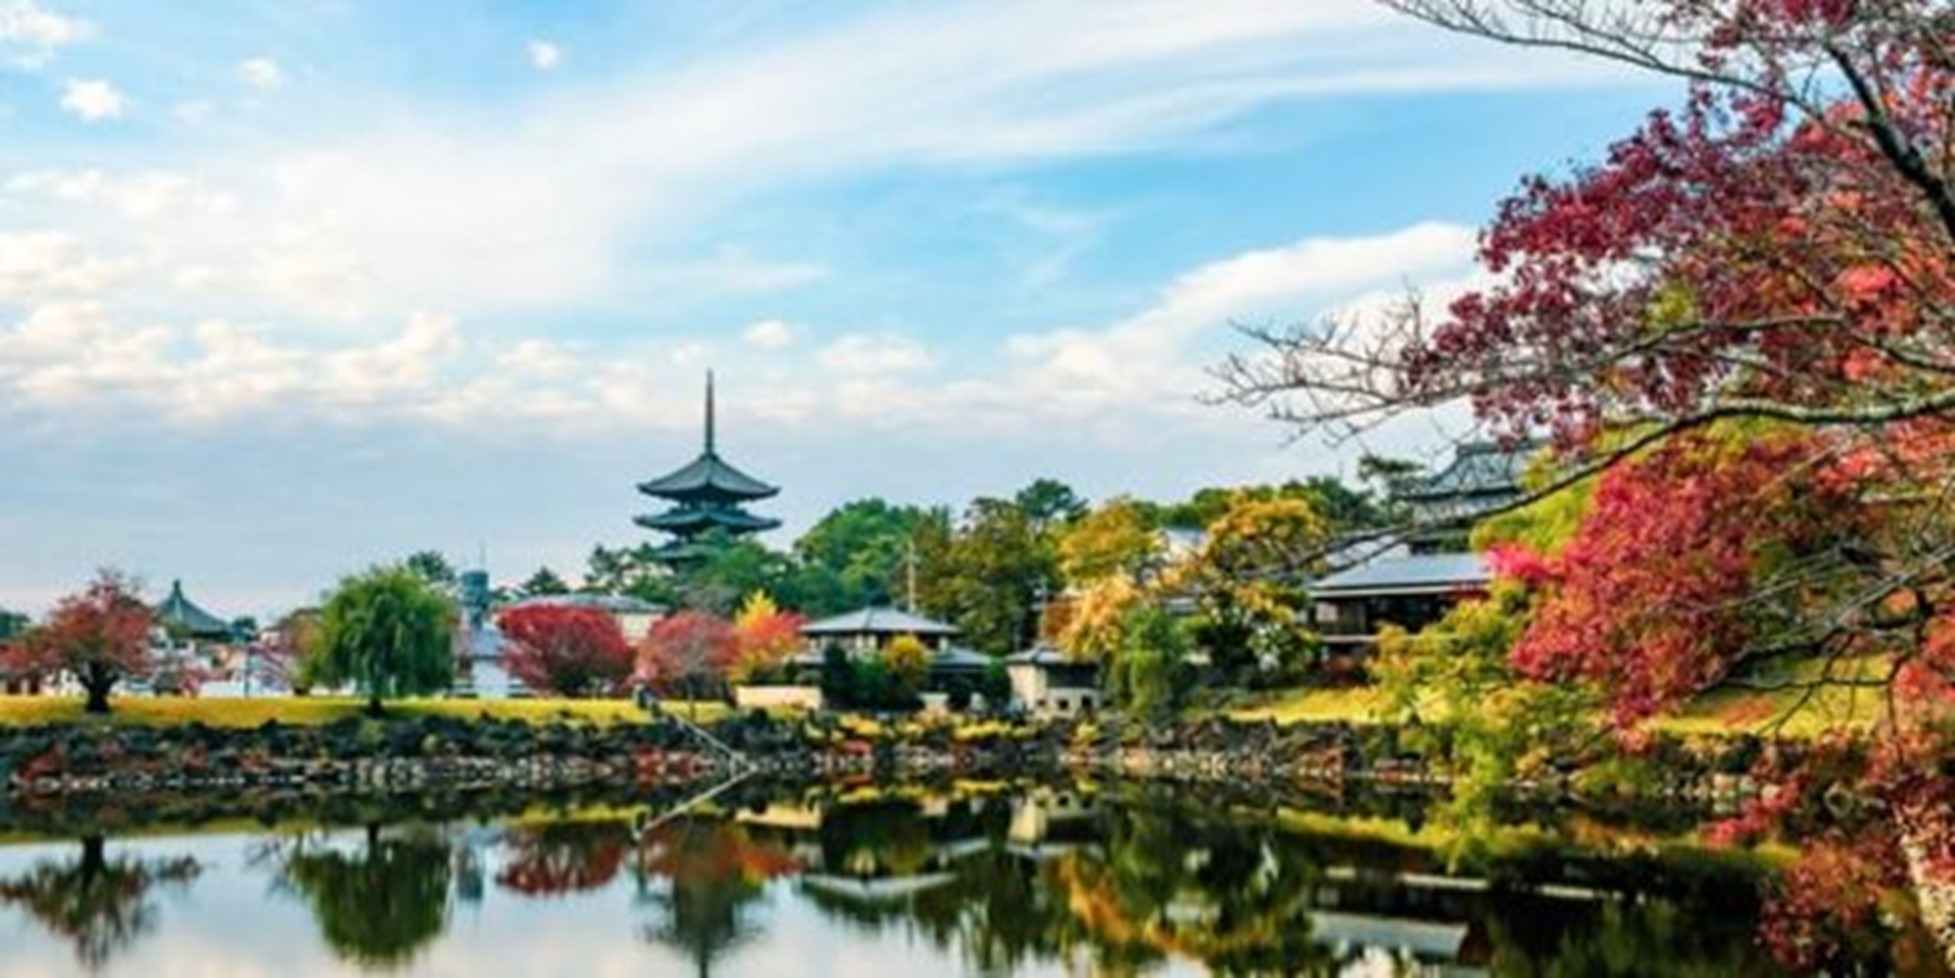 JAPONIA IN ARMONII DE TOAMNA 2021 - TRADITIE NEATINSA SI MODERN LA INALTIME